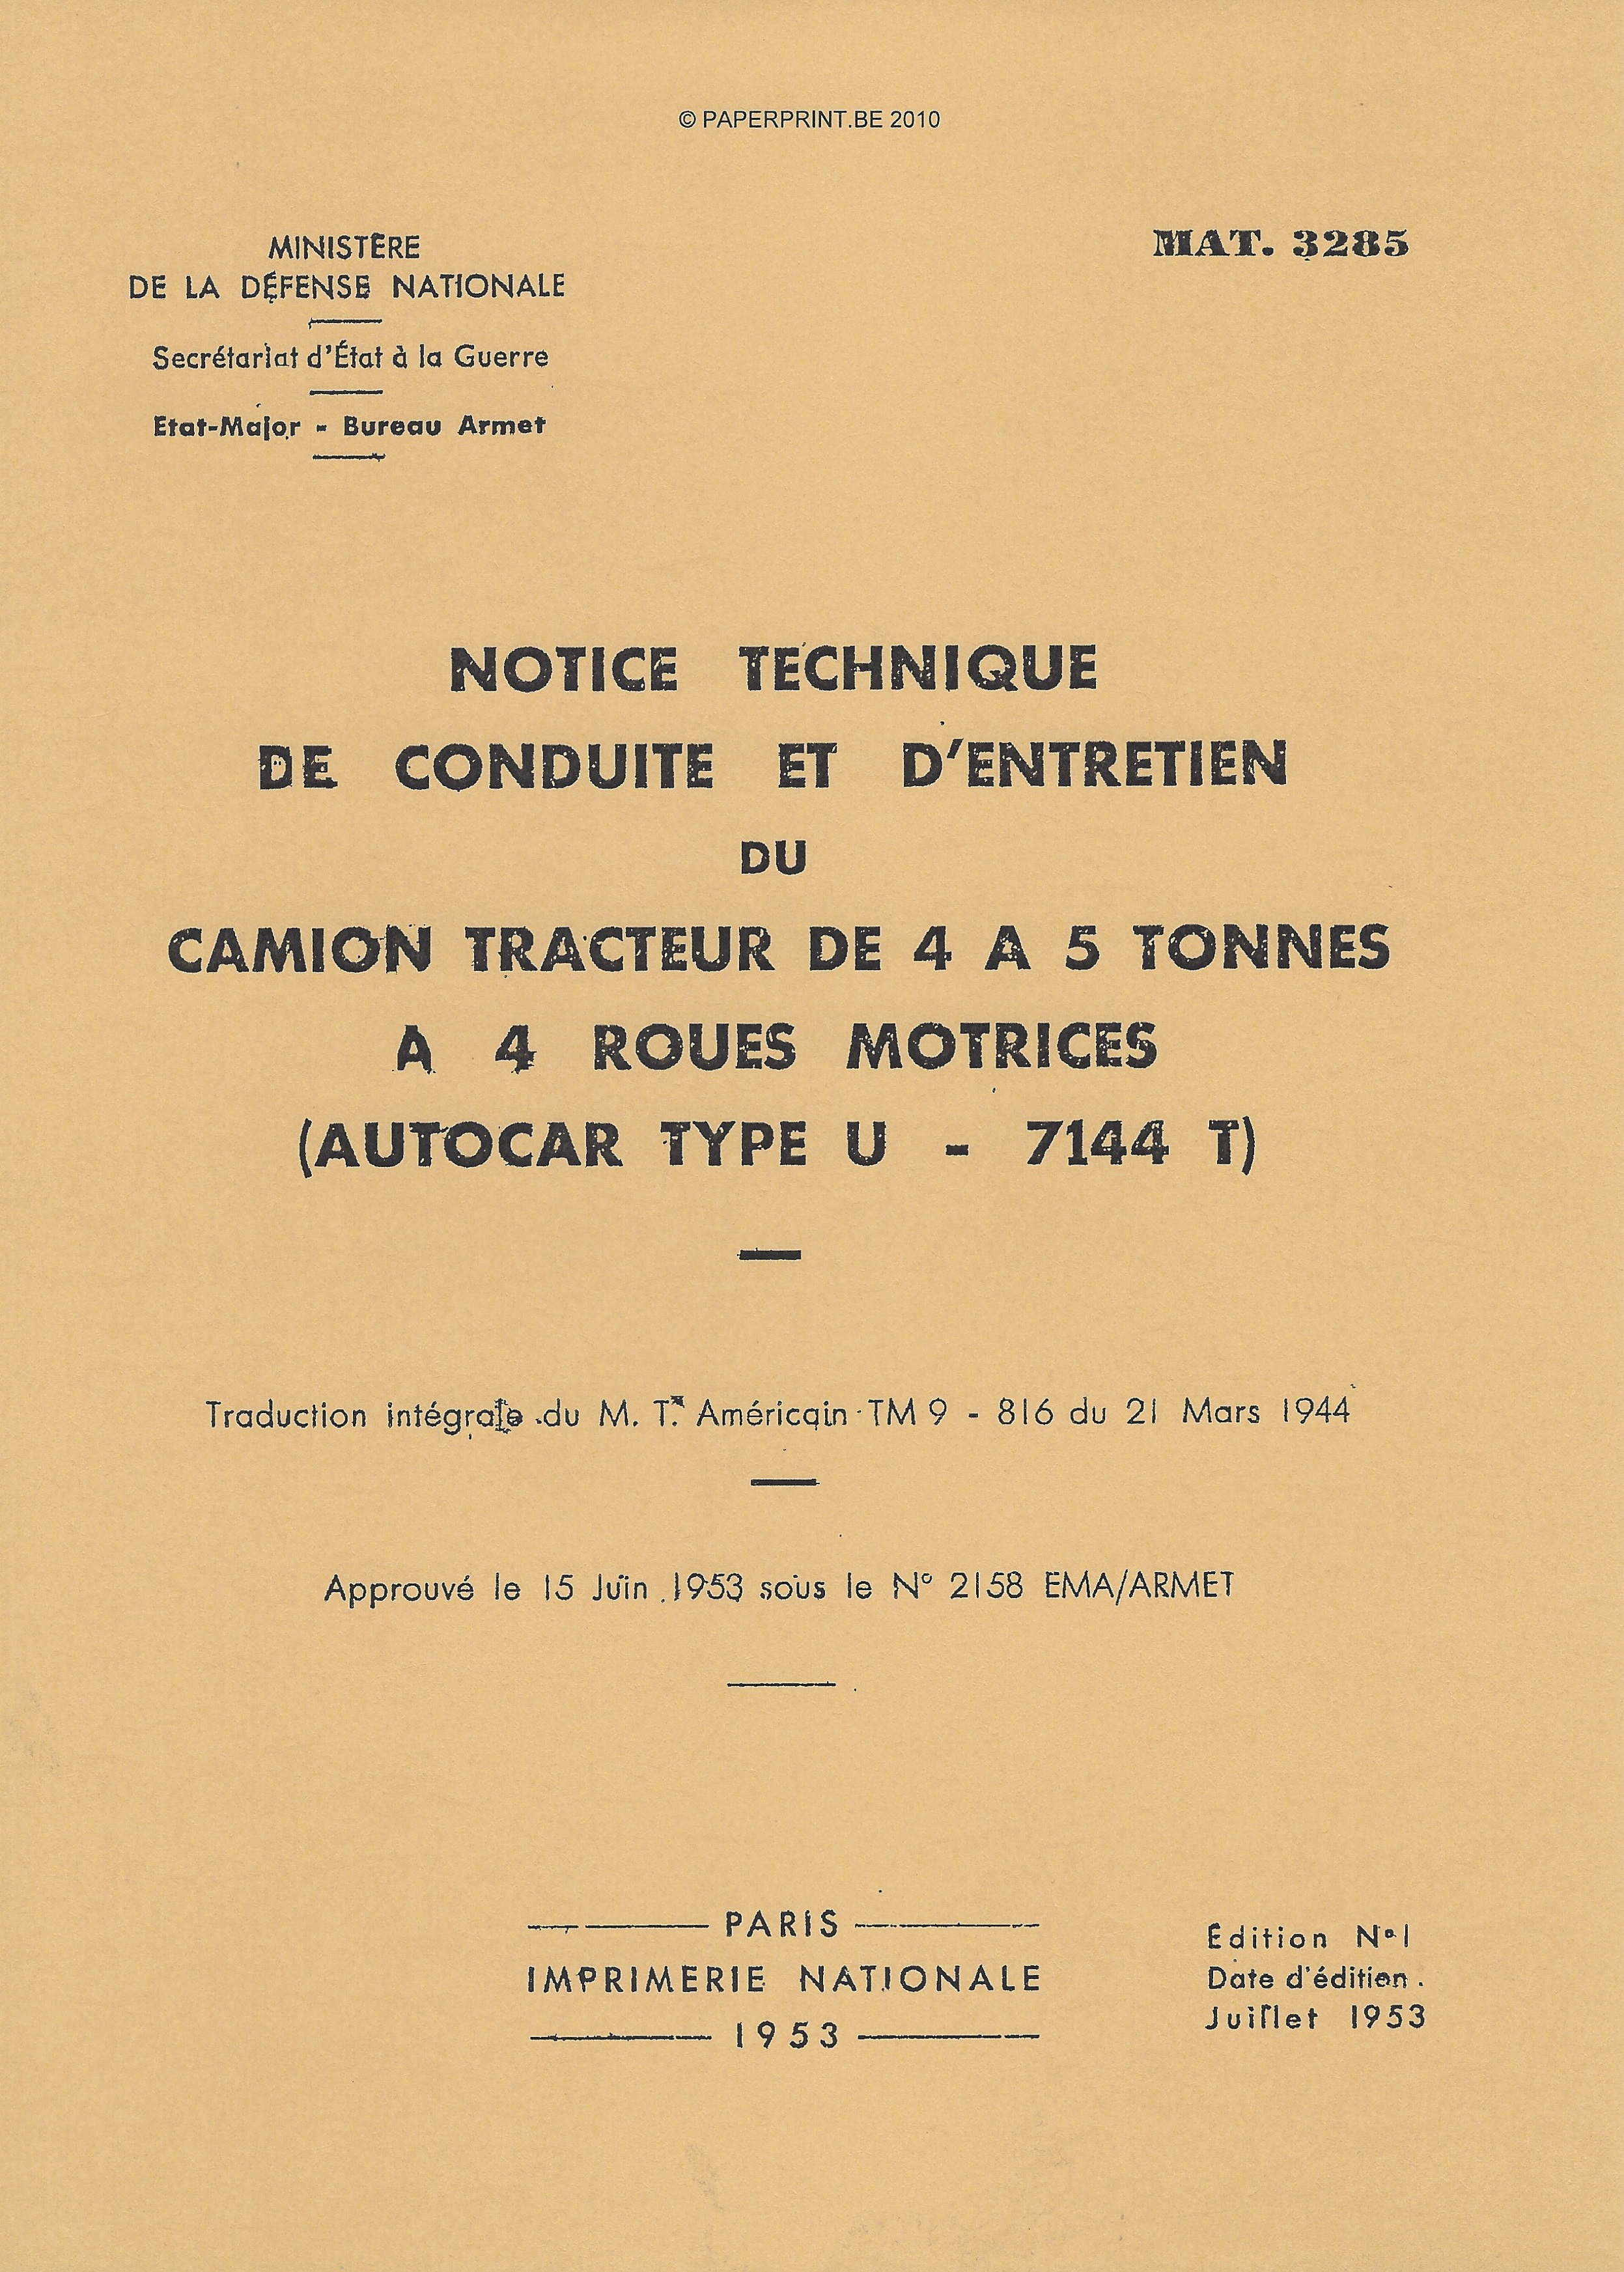 TM 9-816 FR CAMION TRACTEUR DE 4 A 5 TONNES A 4 ROUES MOTRICES (AUTOCAR TYPE U-7144T)